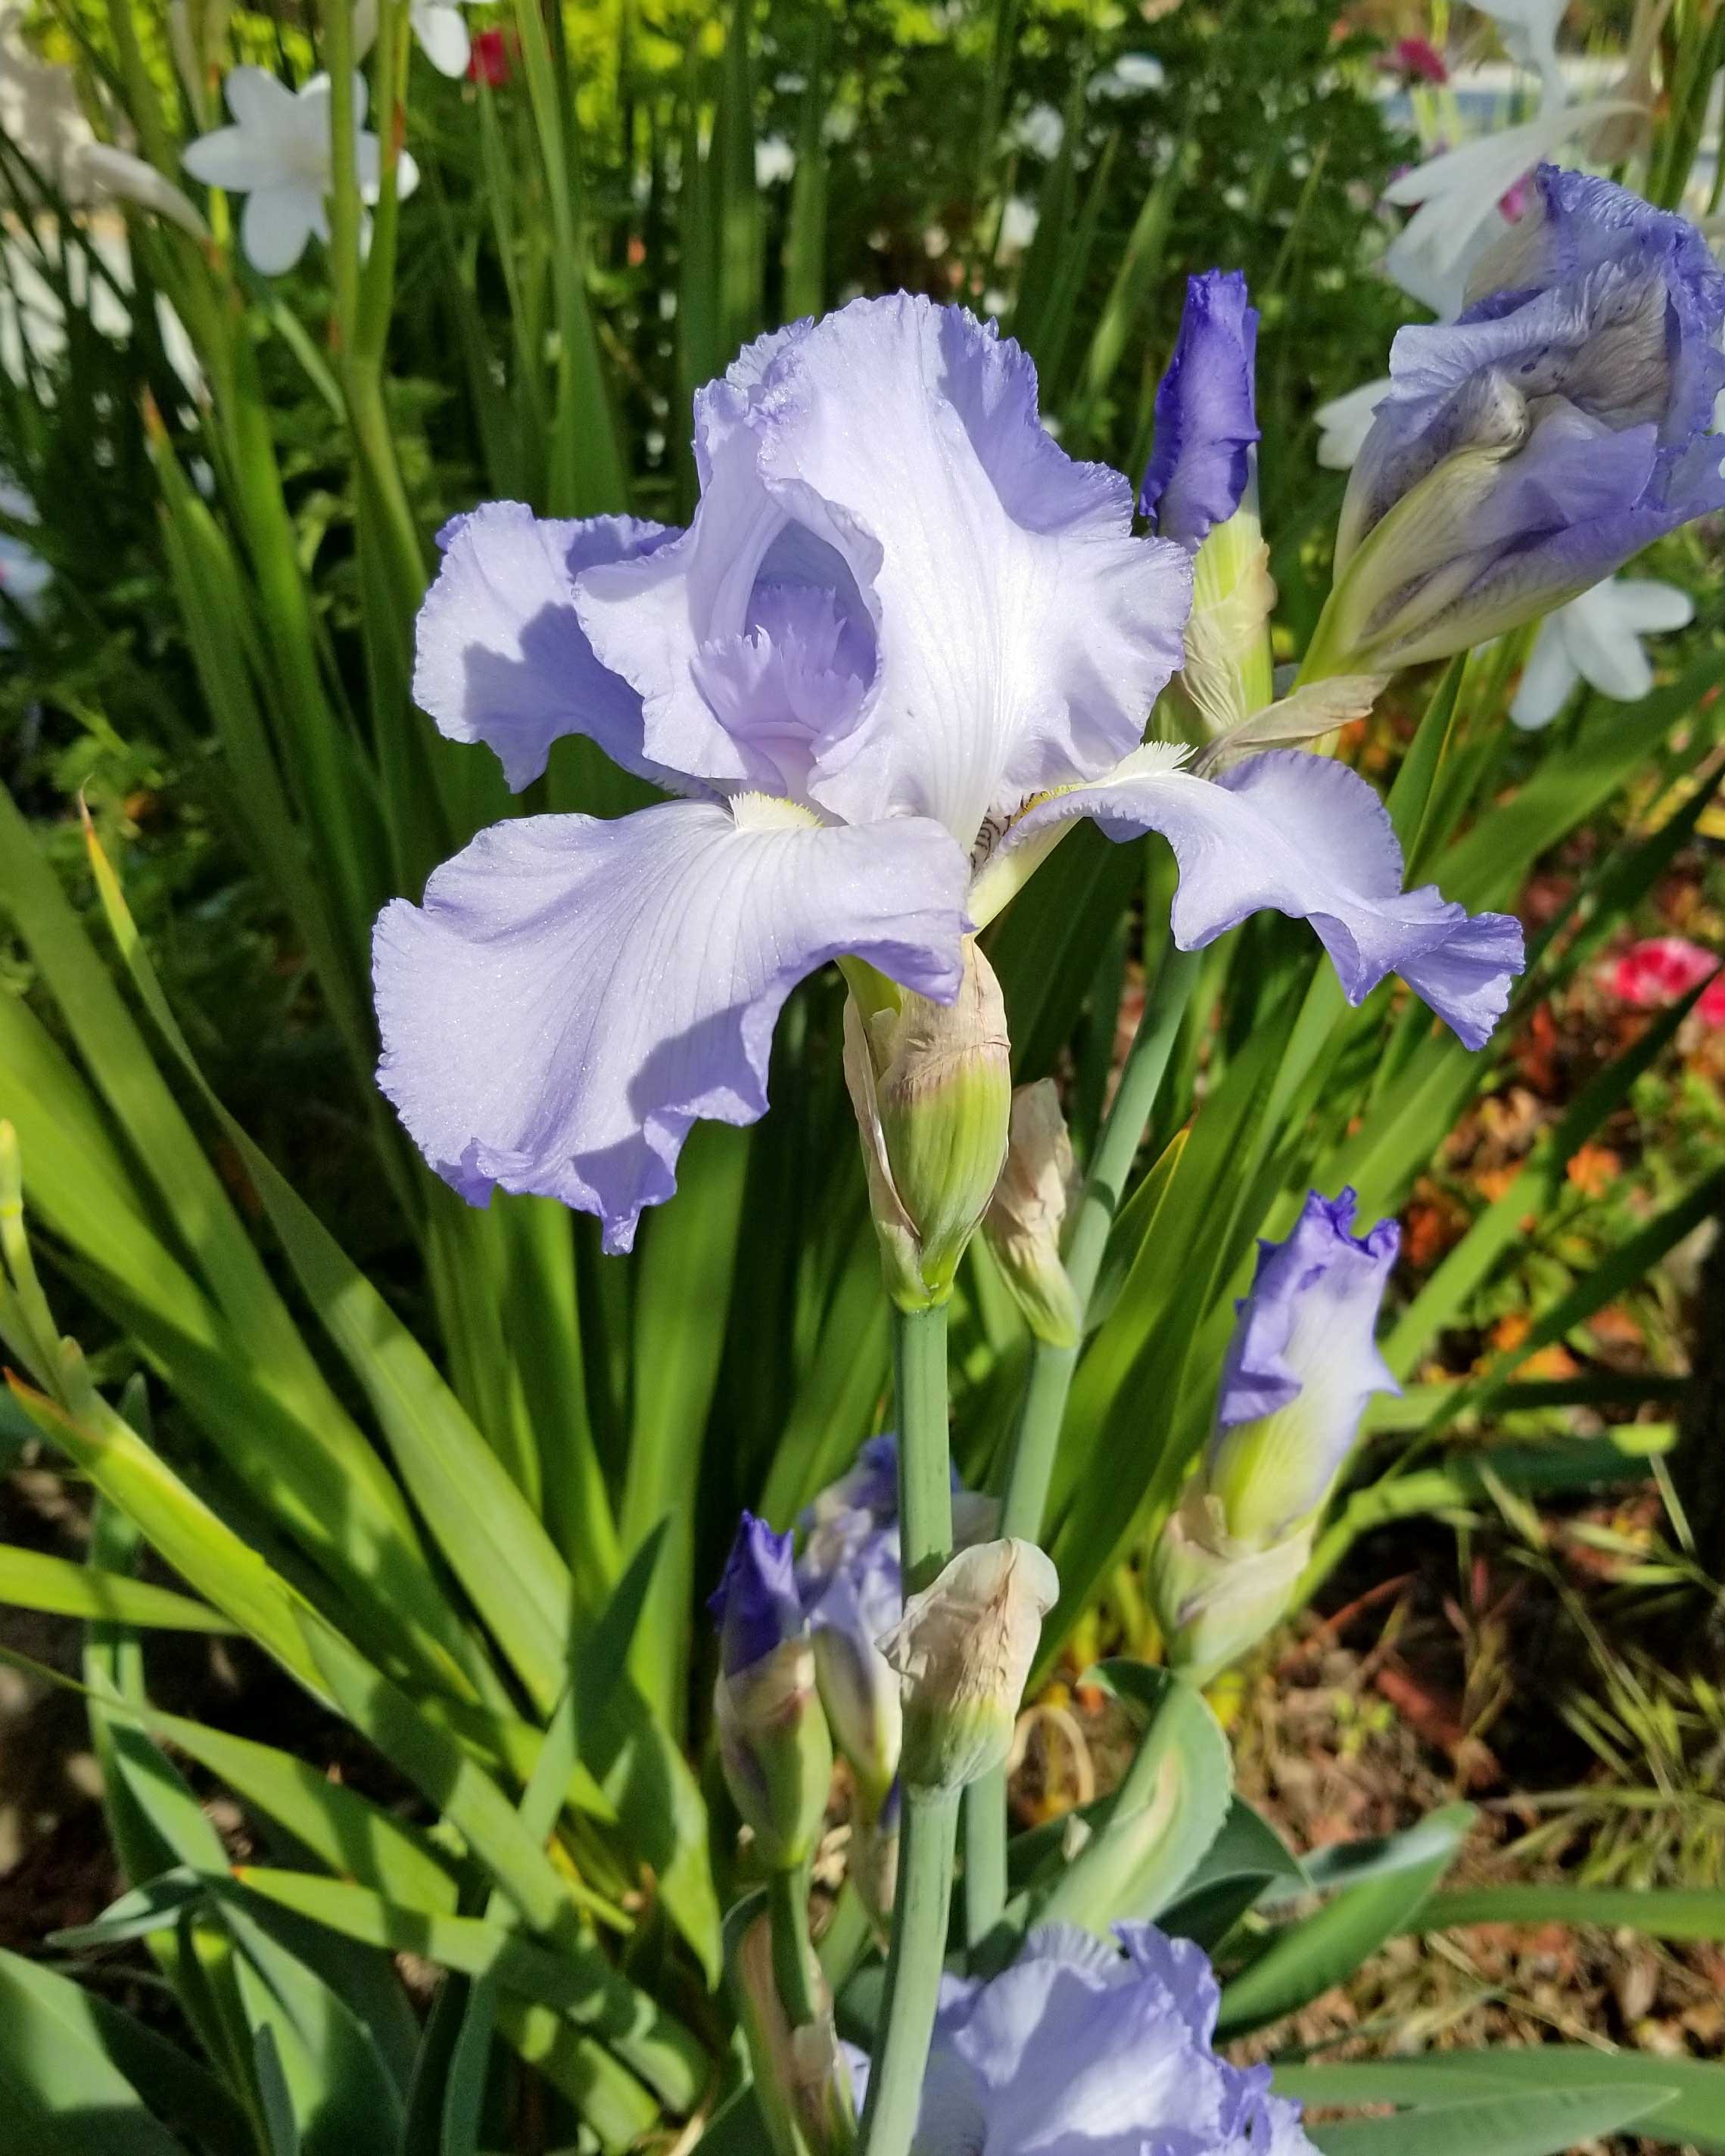 blue-iris